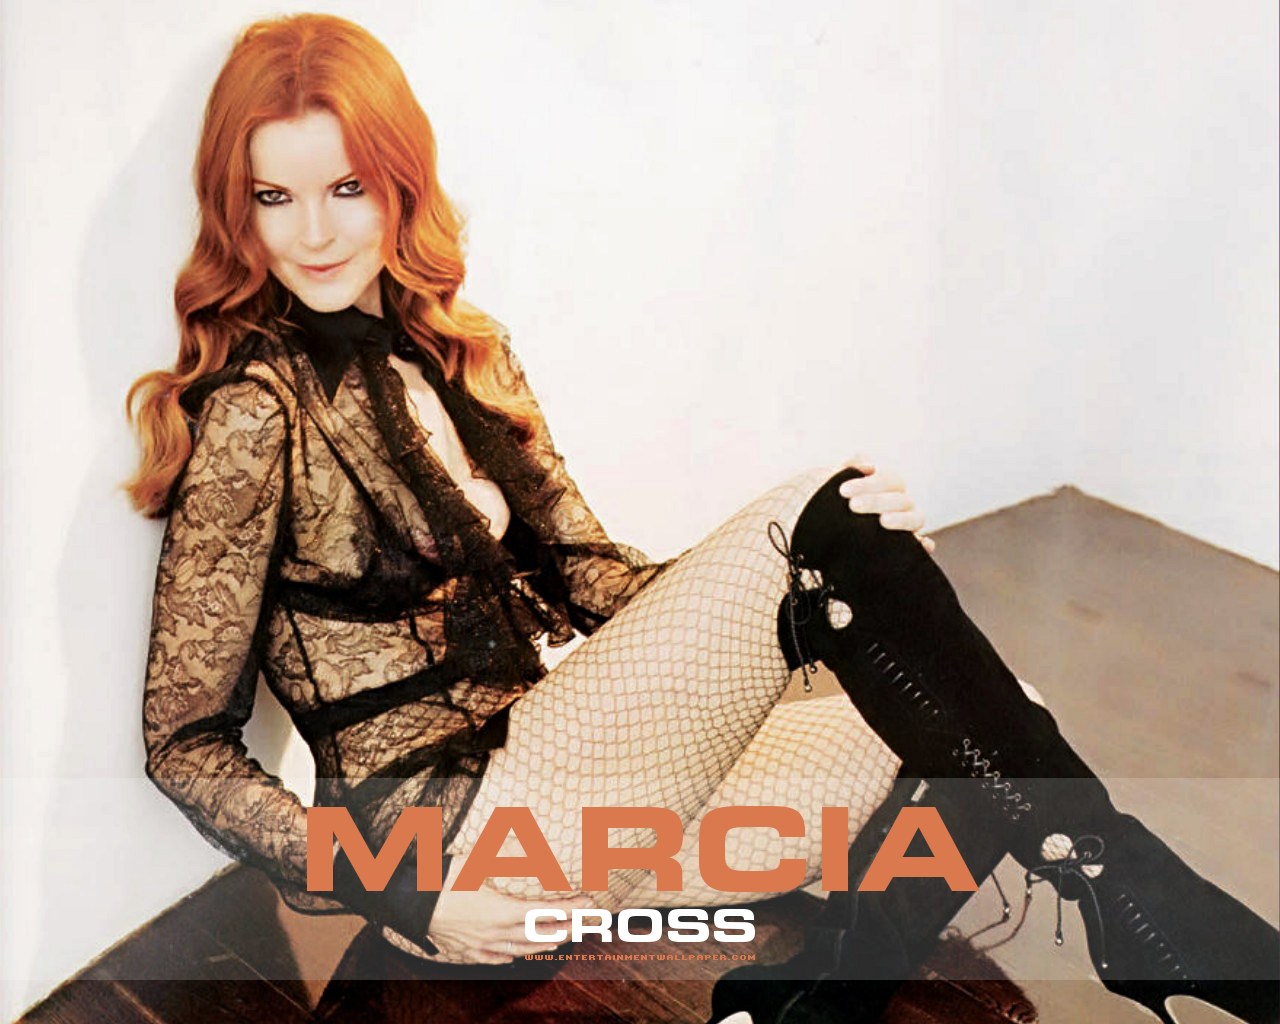 Marcia-Cross-marcia-cross-645120_1280_1024.jpg